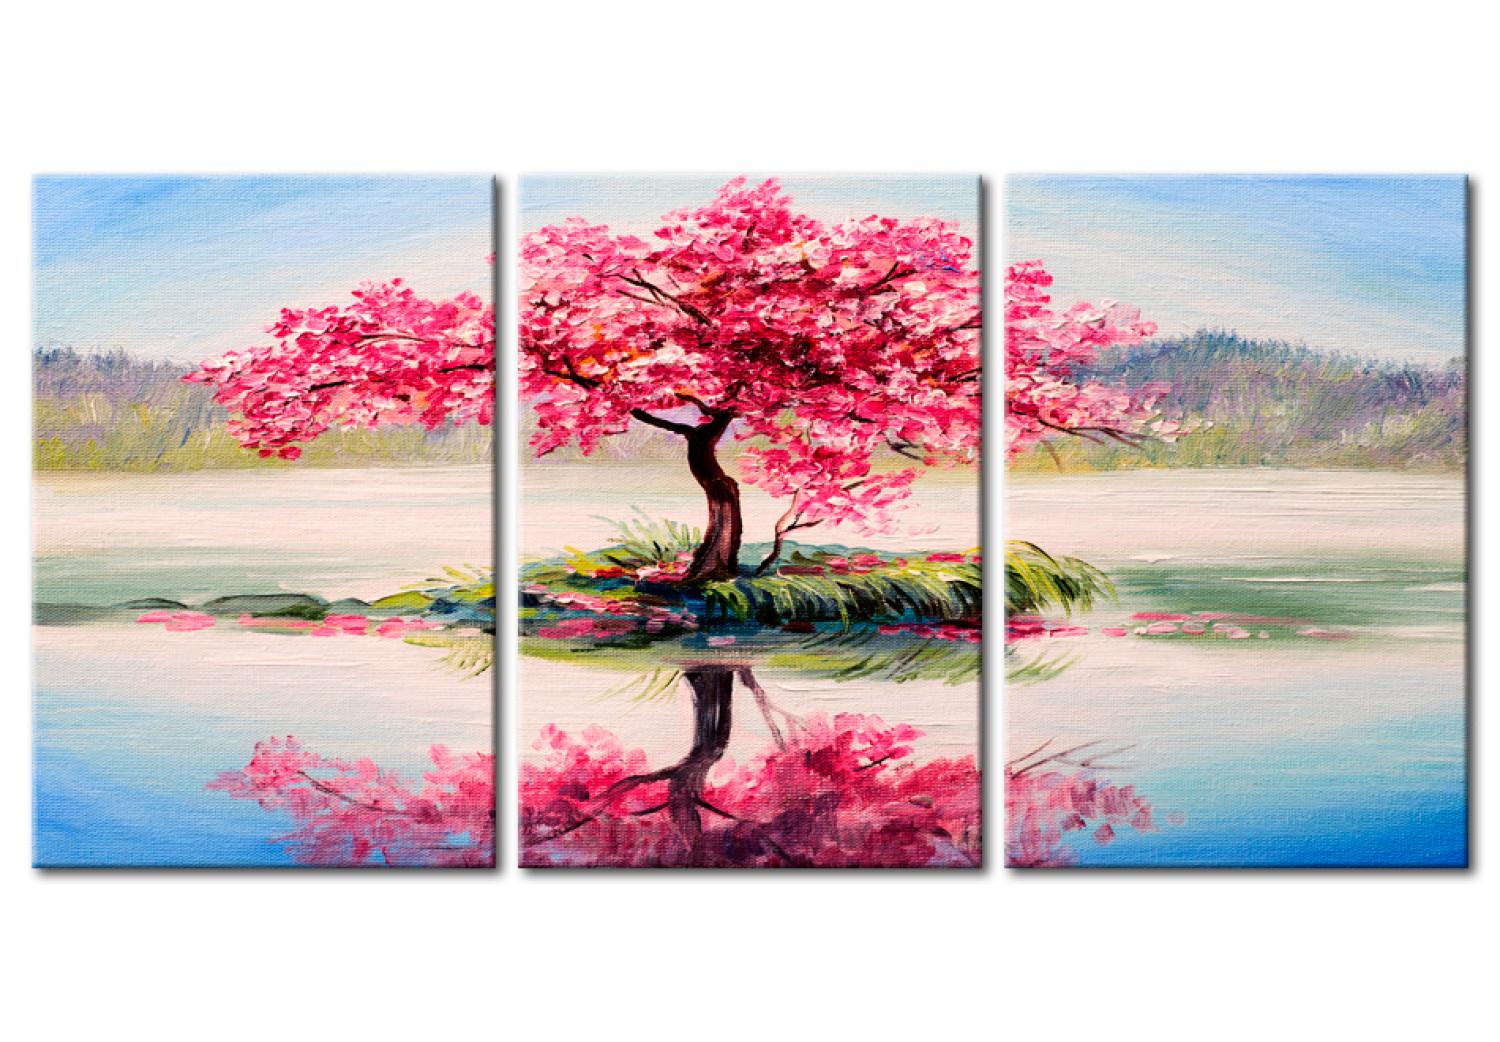 Cuadro Isla de Sakura (3 piezas) - árbol de cerezo en lago